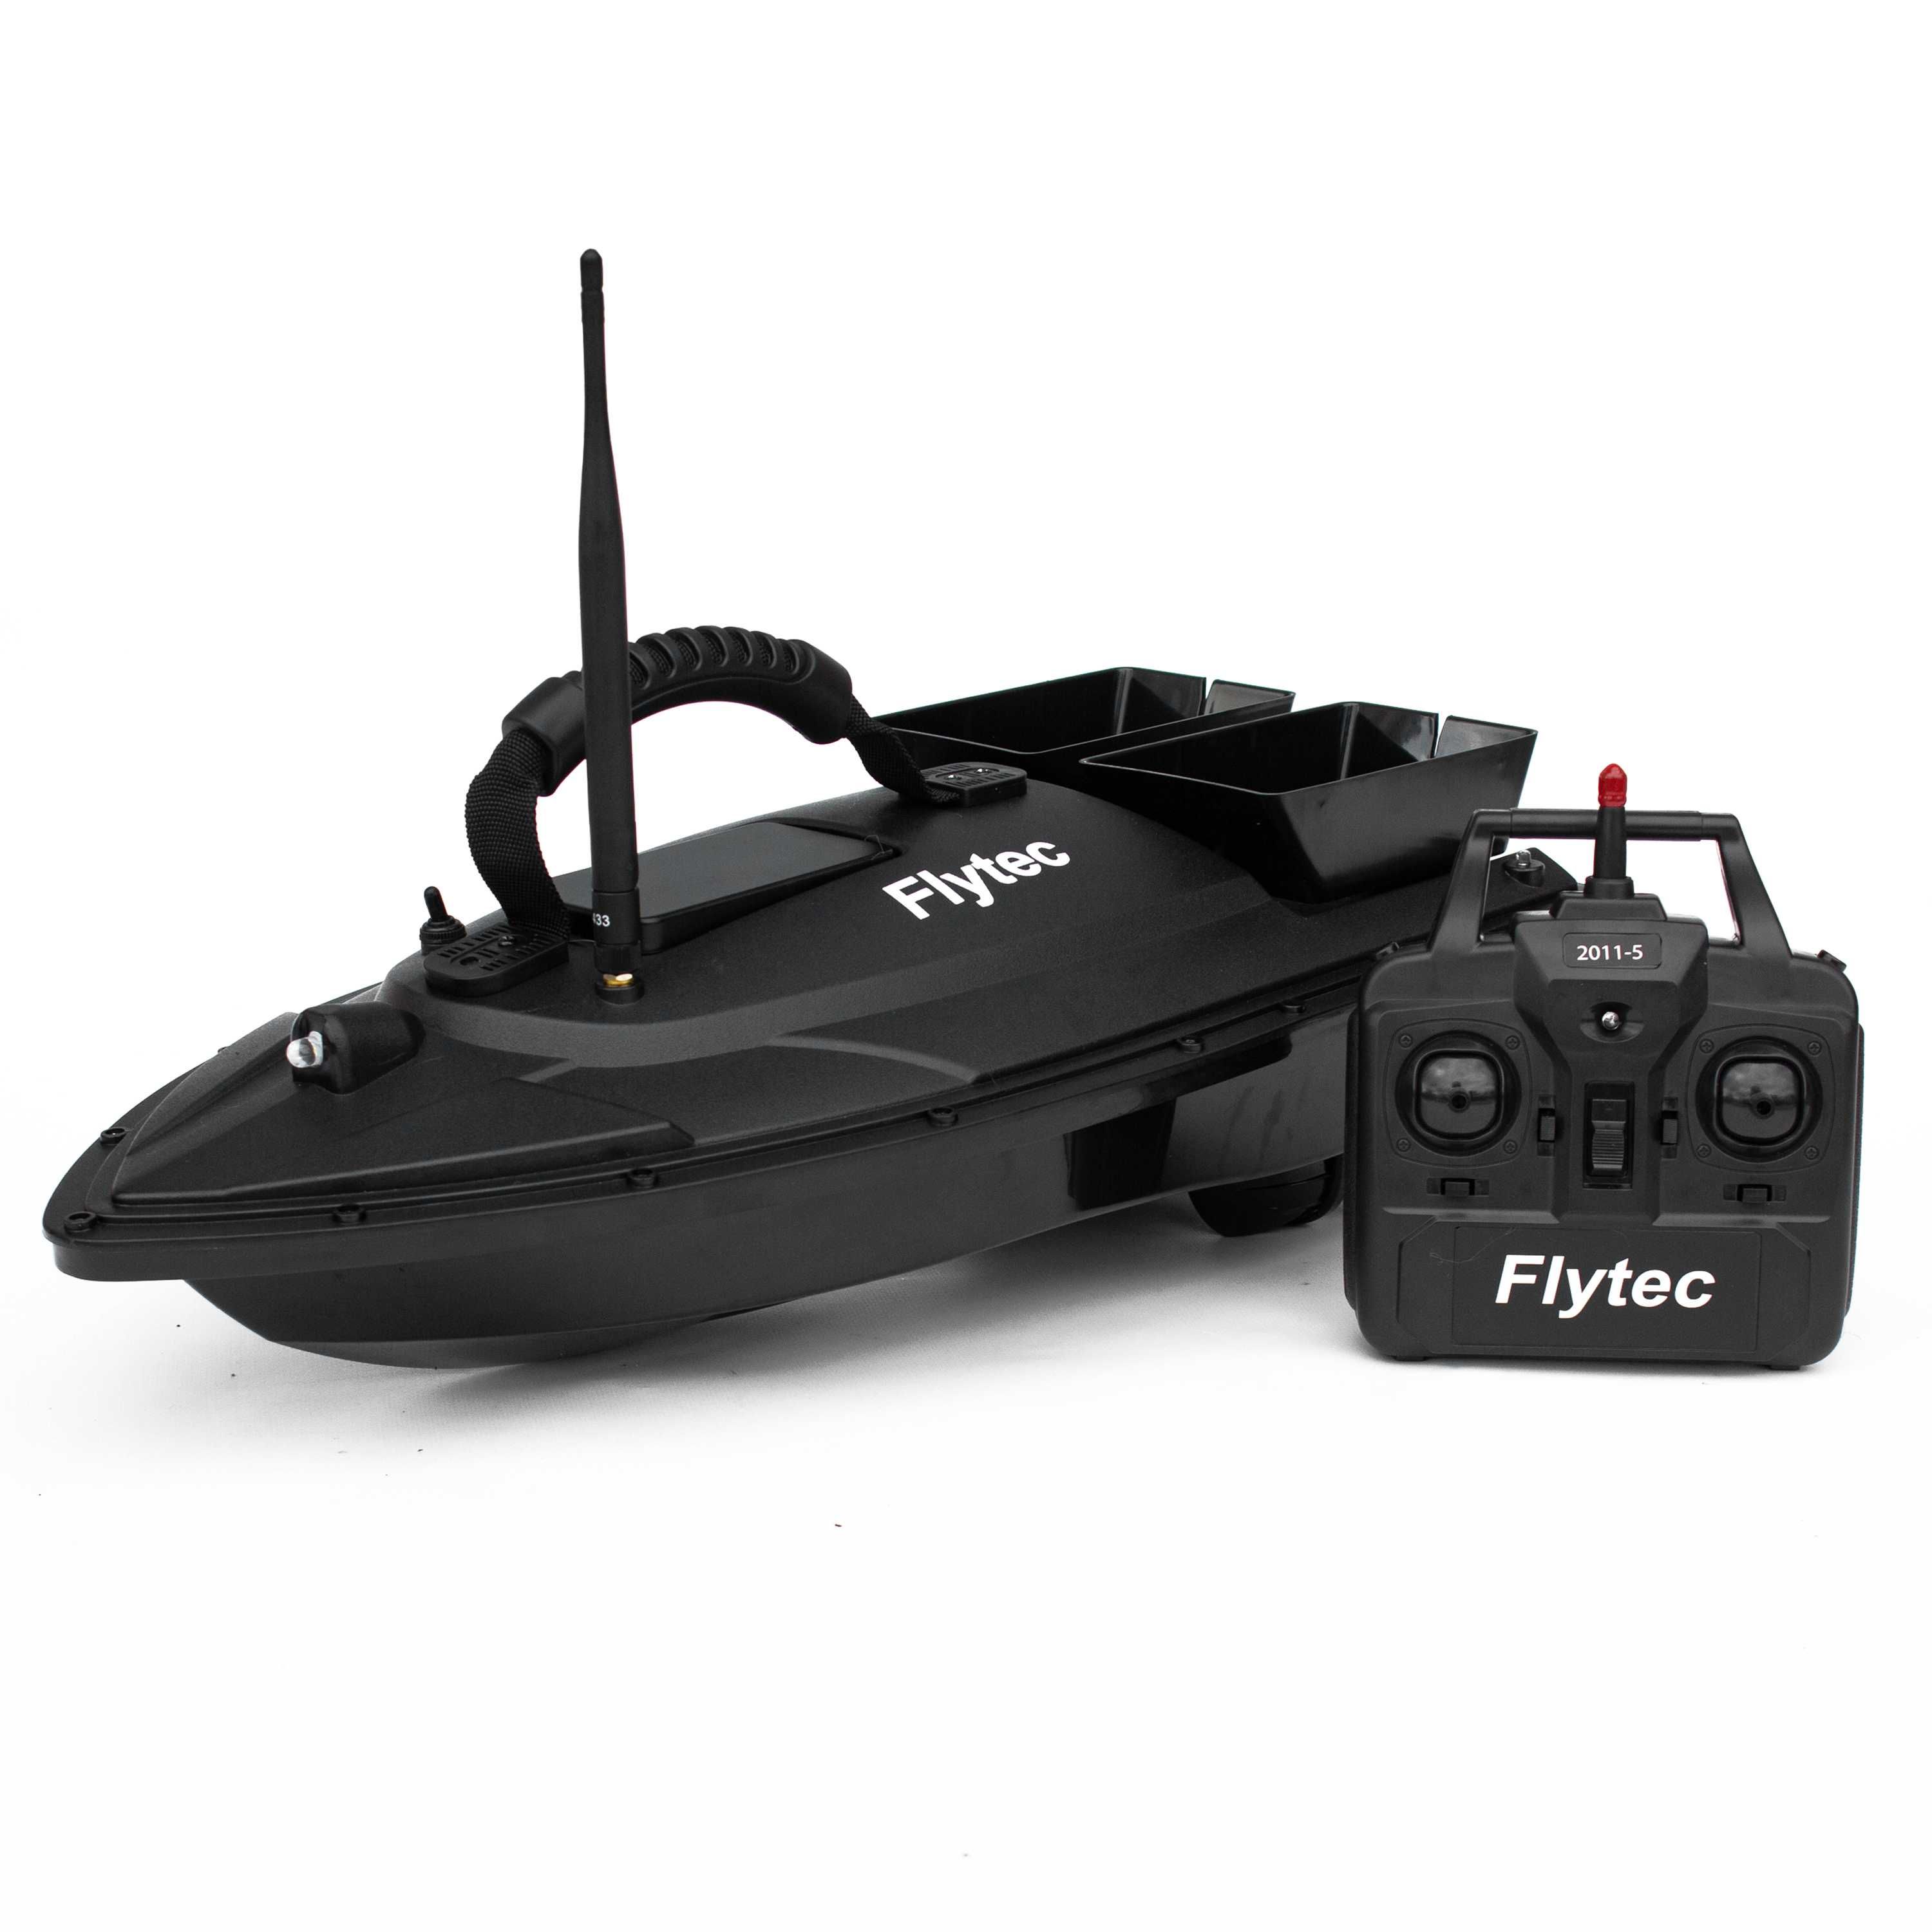 Кораблик для рыбалки Flytec 2011-5 для завоза прикормки